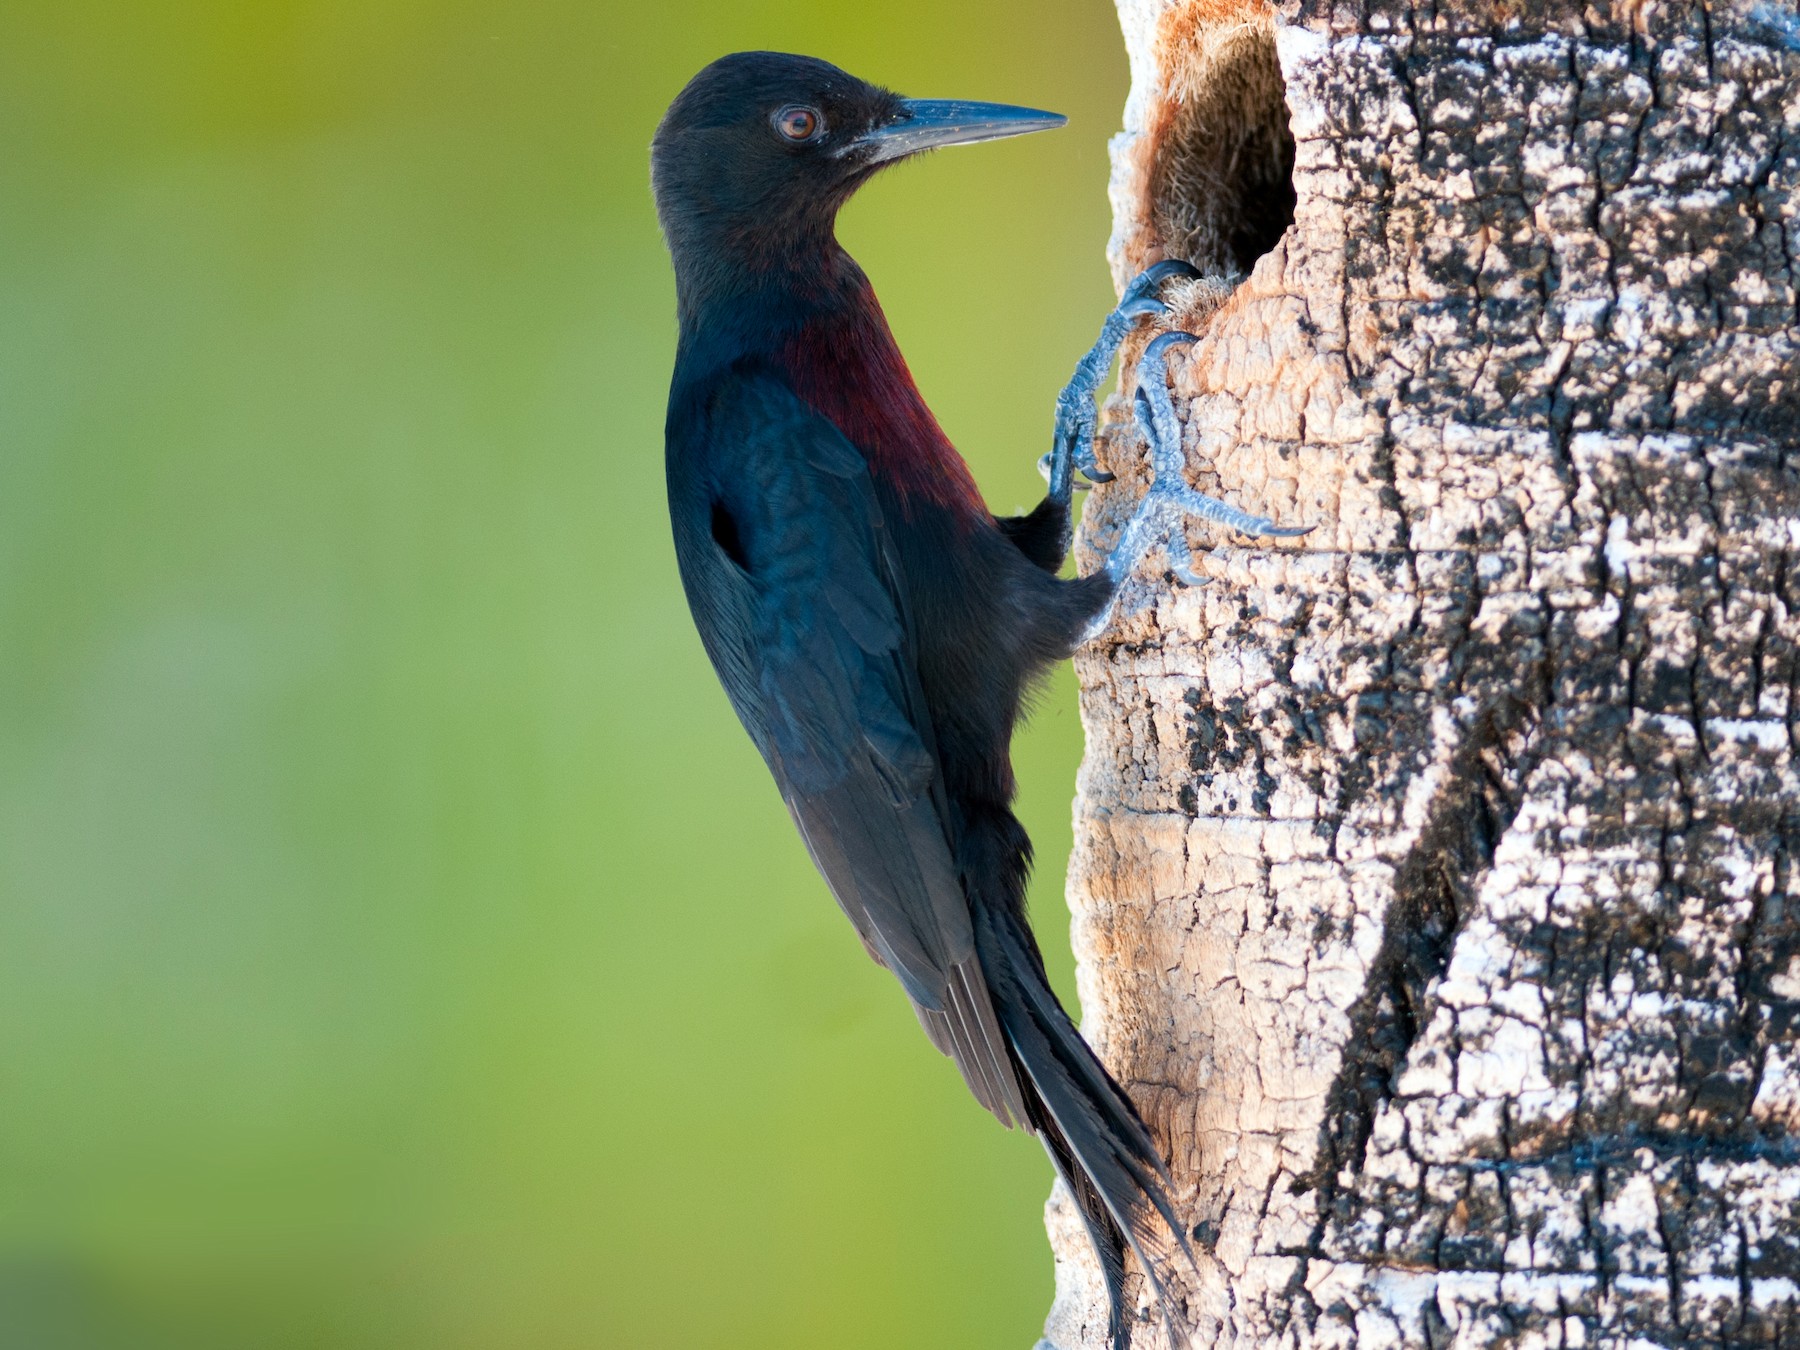 Guadeloupe Woodpecker - Frantz Delcroix (Duzont)